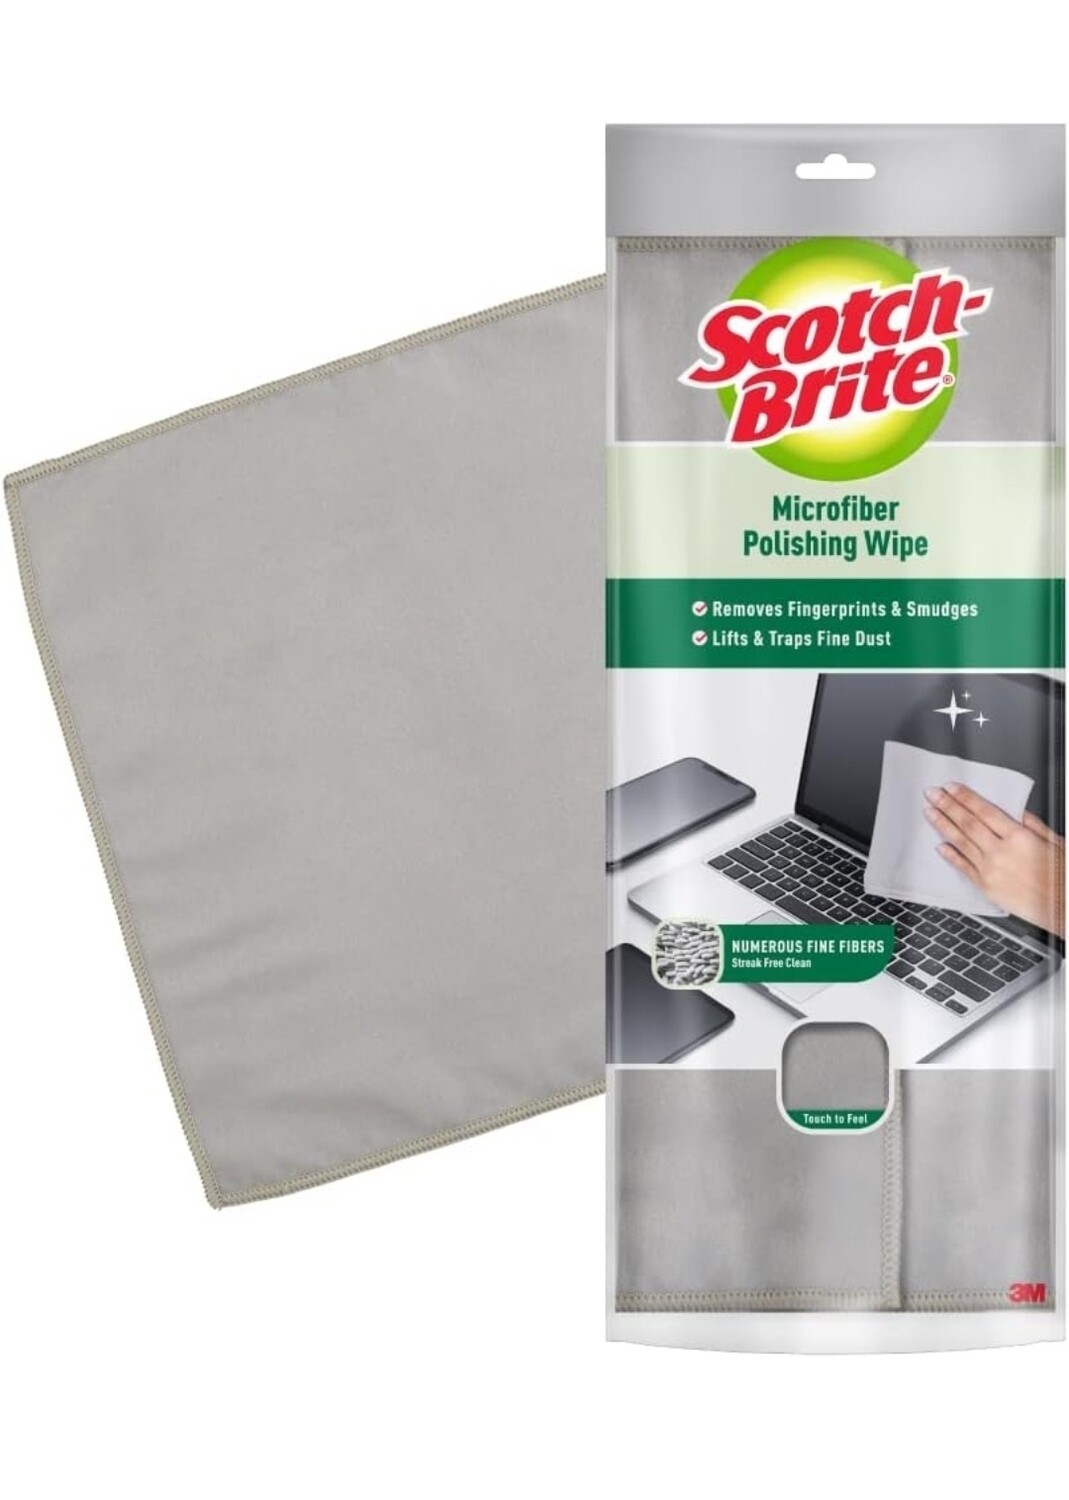 Scotch-Brite Microfiber Polishing Wipe